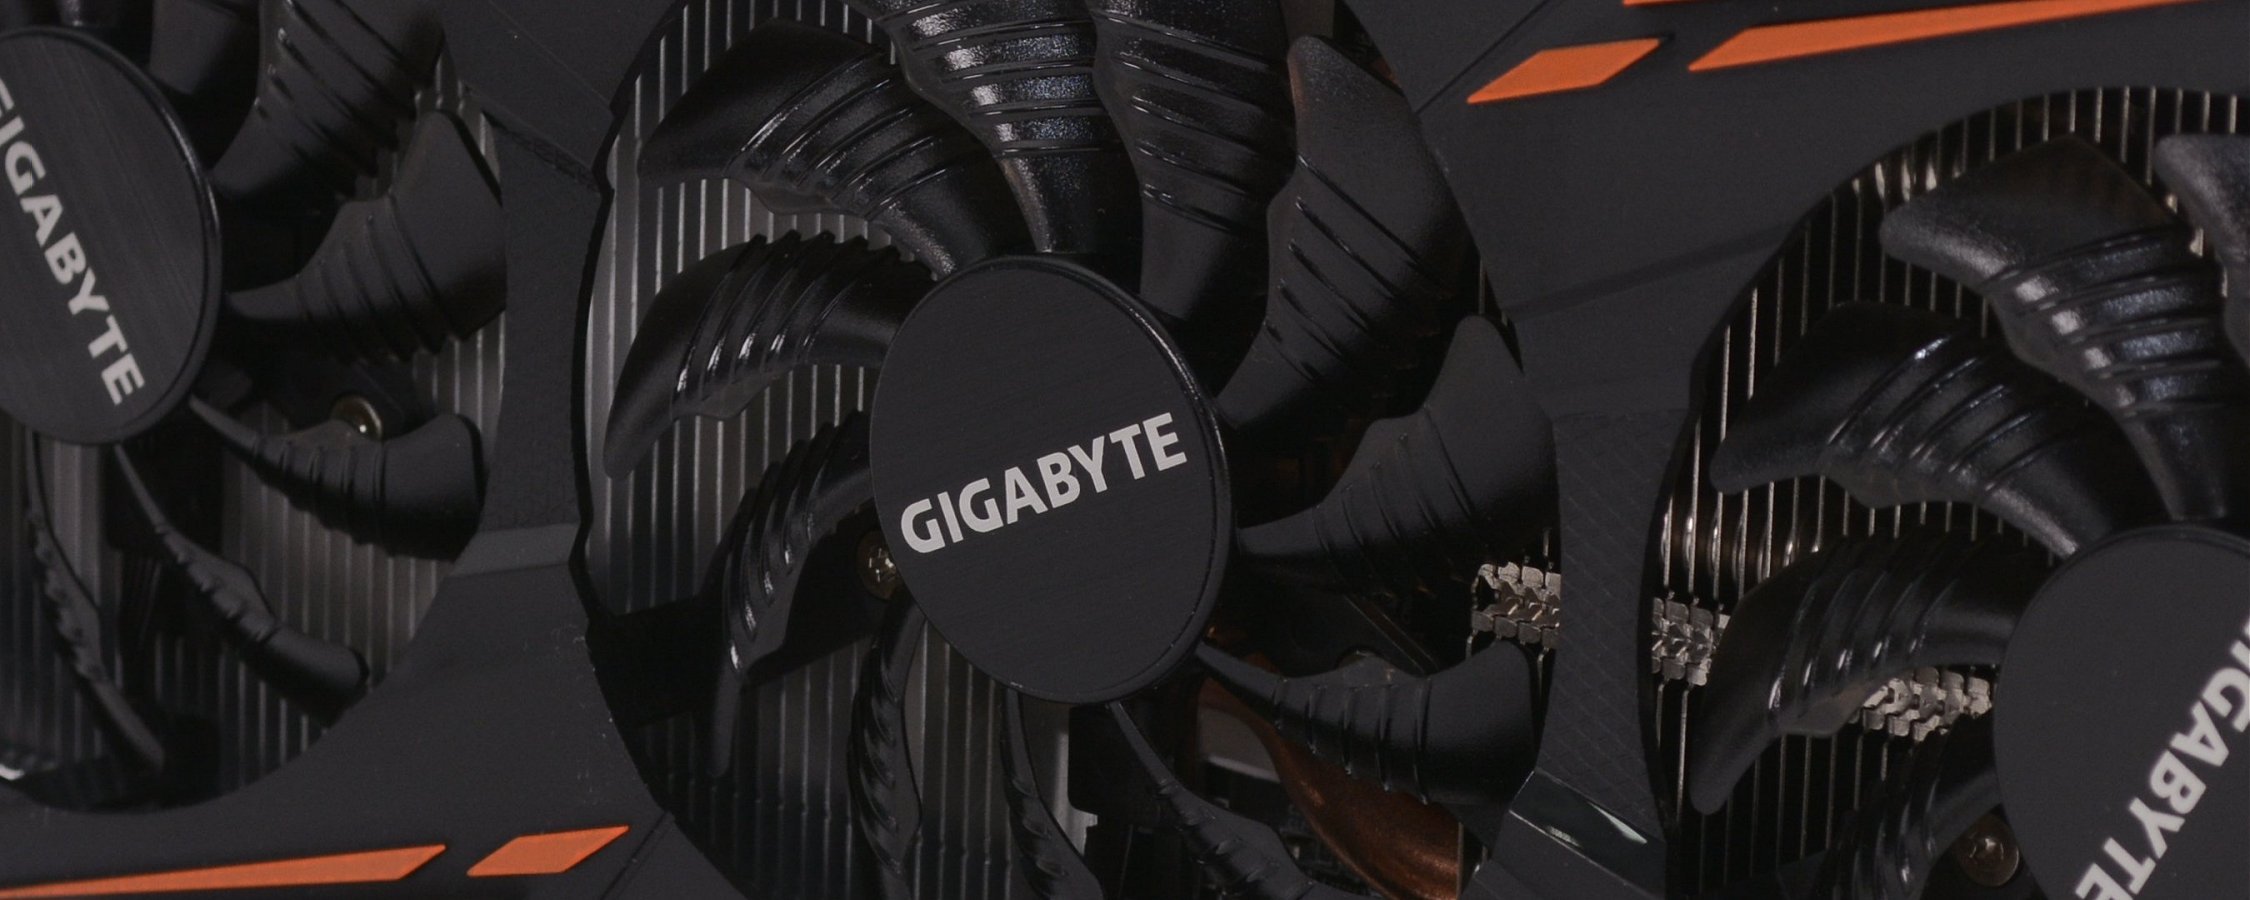 استعراض Gigabyte GeForce GTX 1080 G1 للألعاب 3